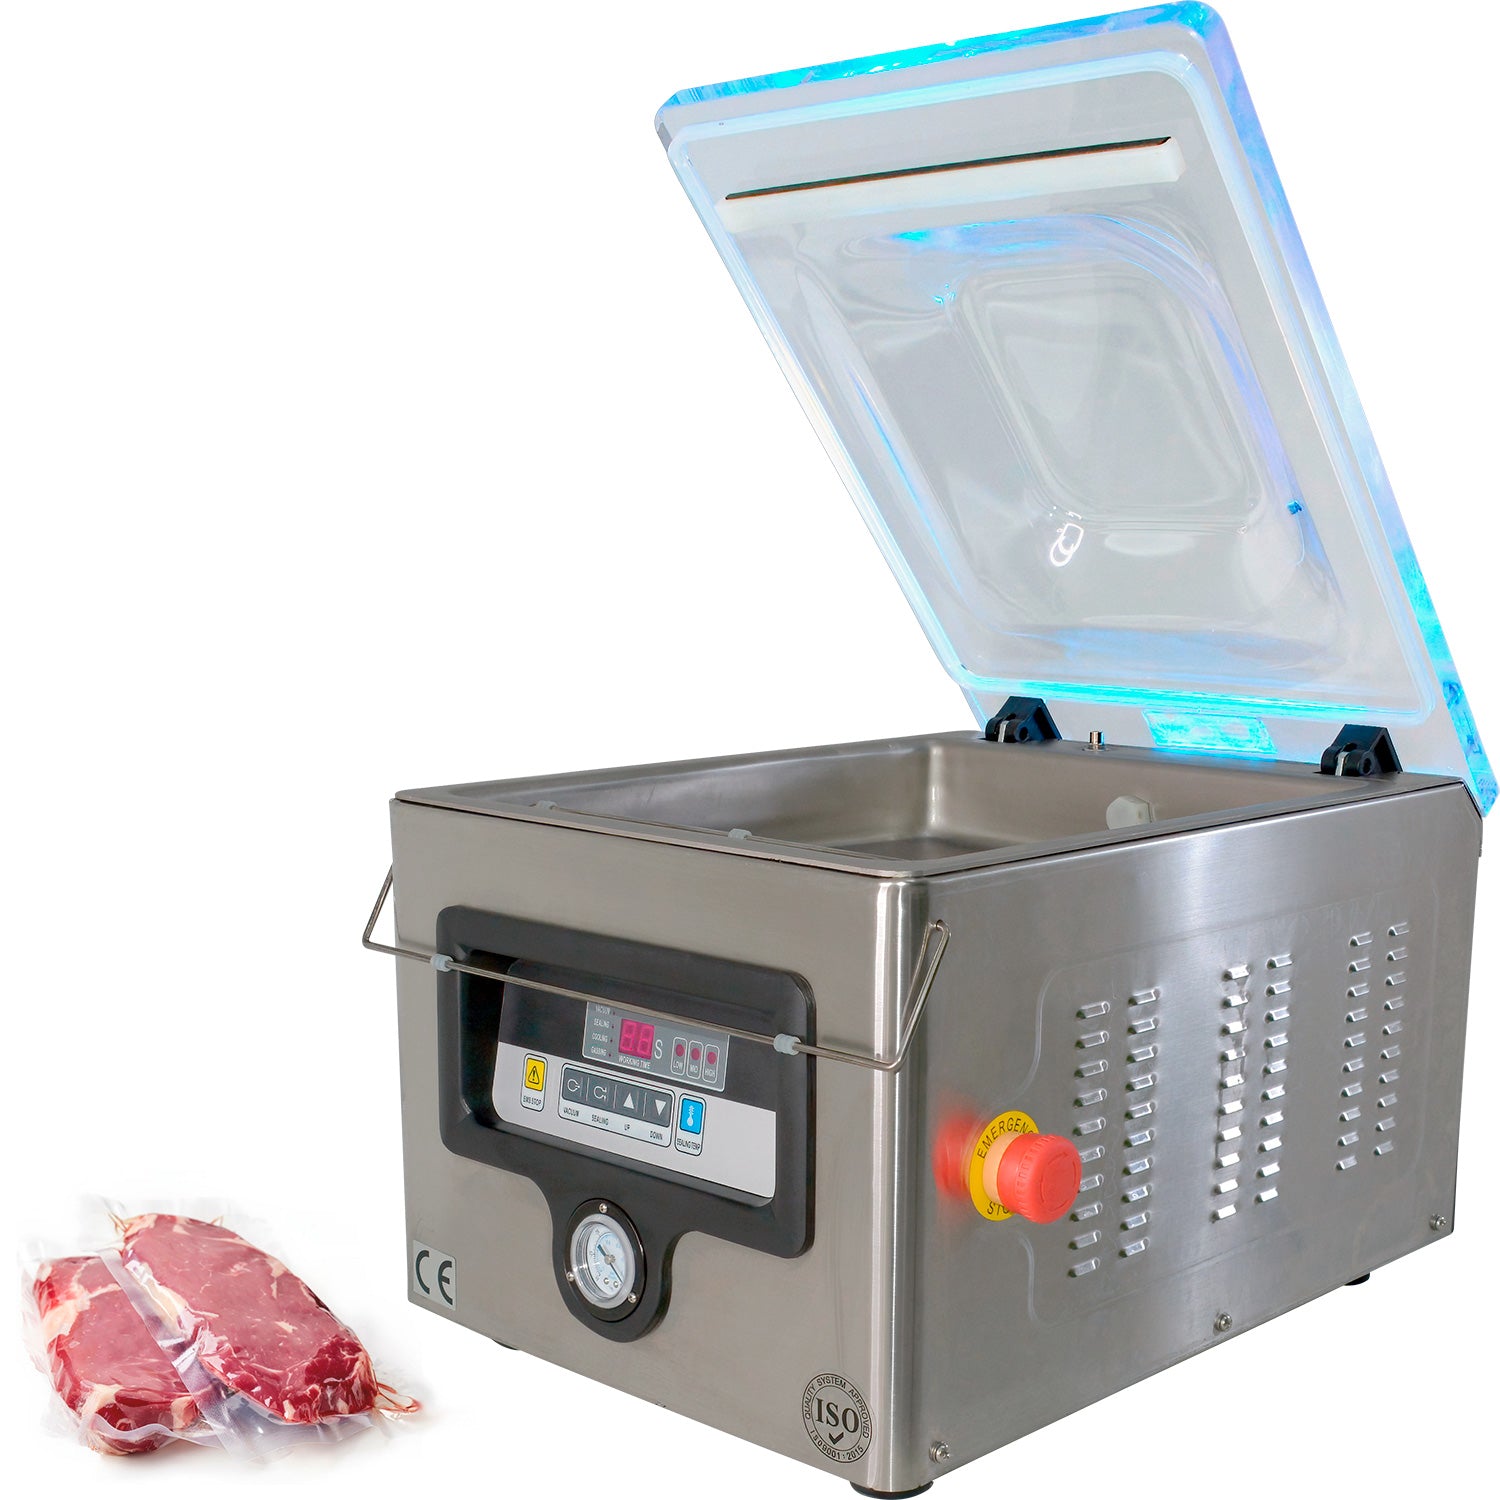 MEGAWISE Máquina selladora al vacío, sellador de alimentos portátil de  succión fuerte, bolsas y cortador incluidos con función de vacío externa